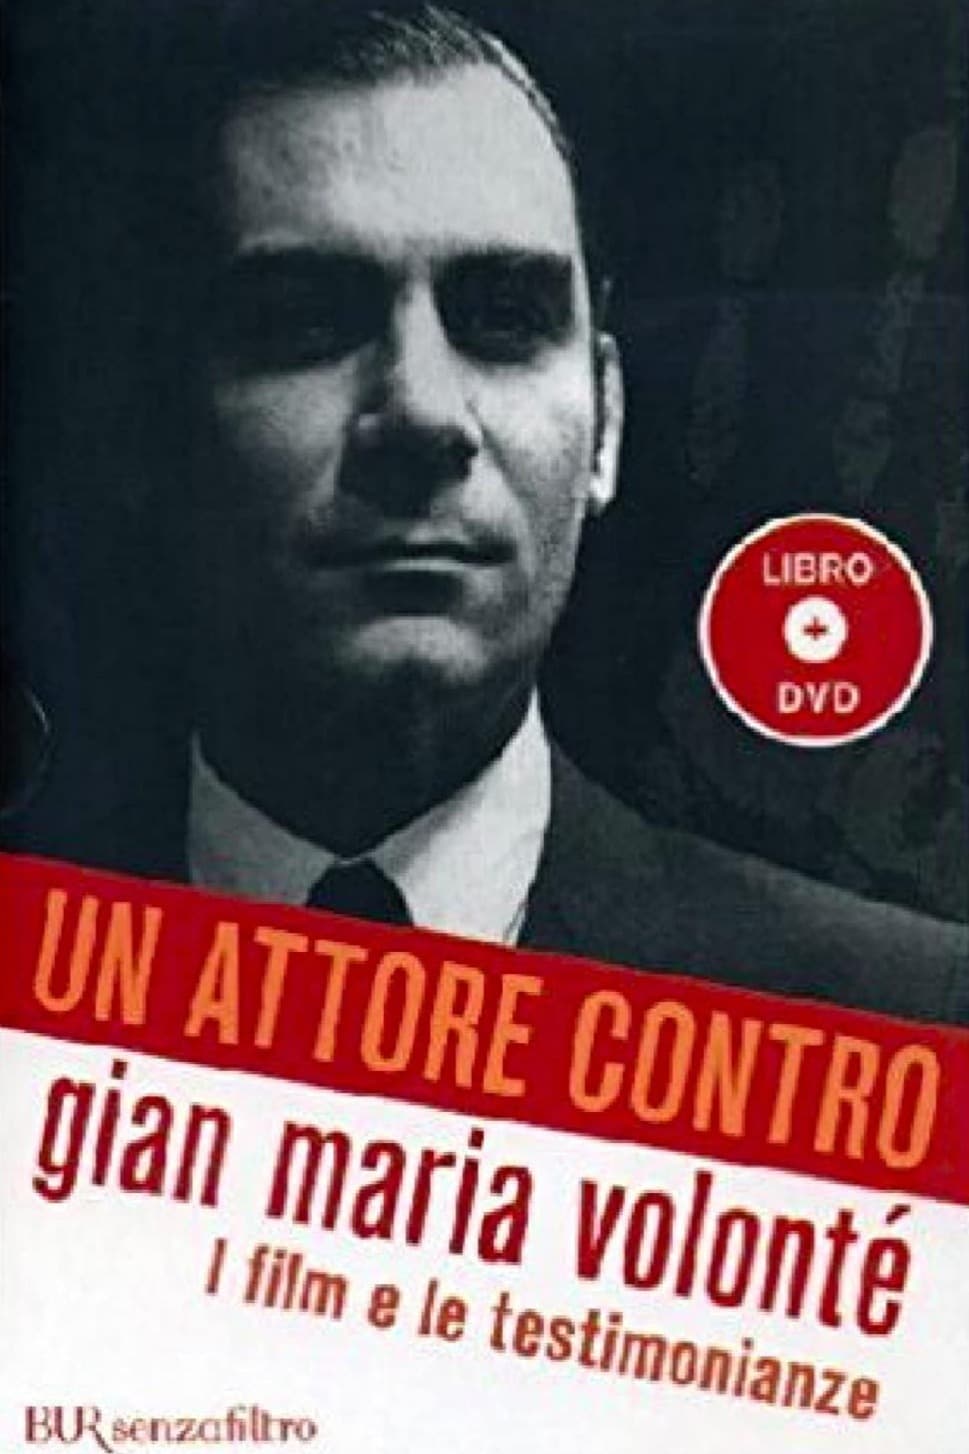 Un attore contro - Gian Maria Volonté